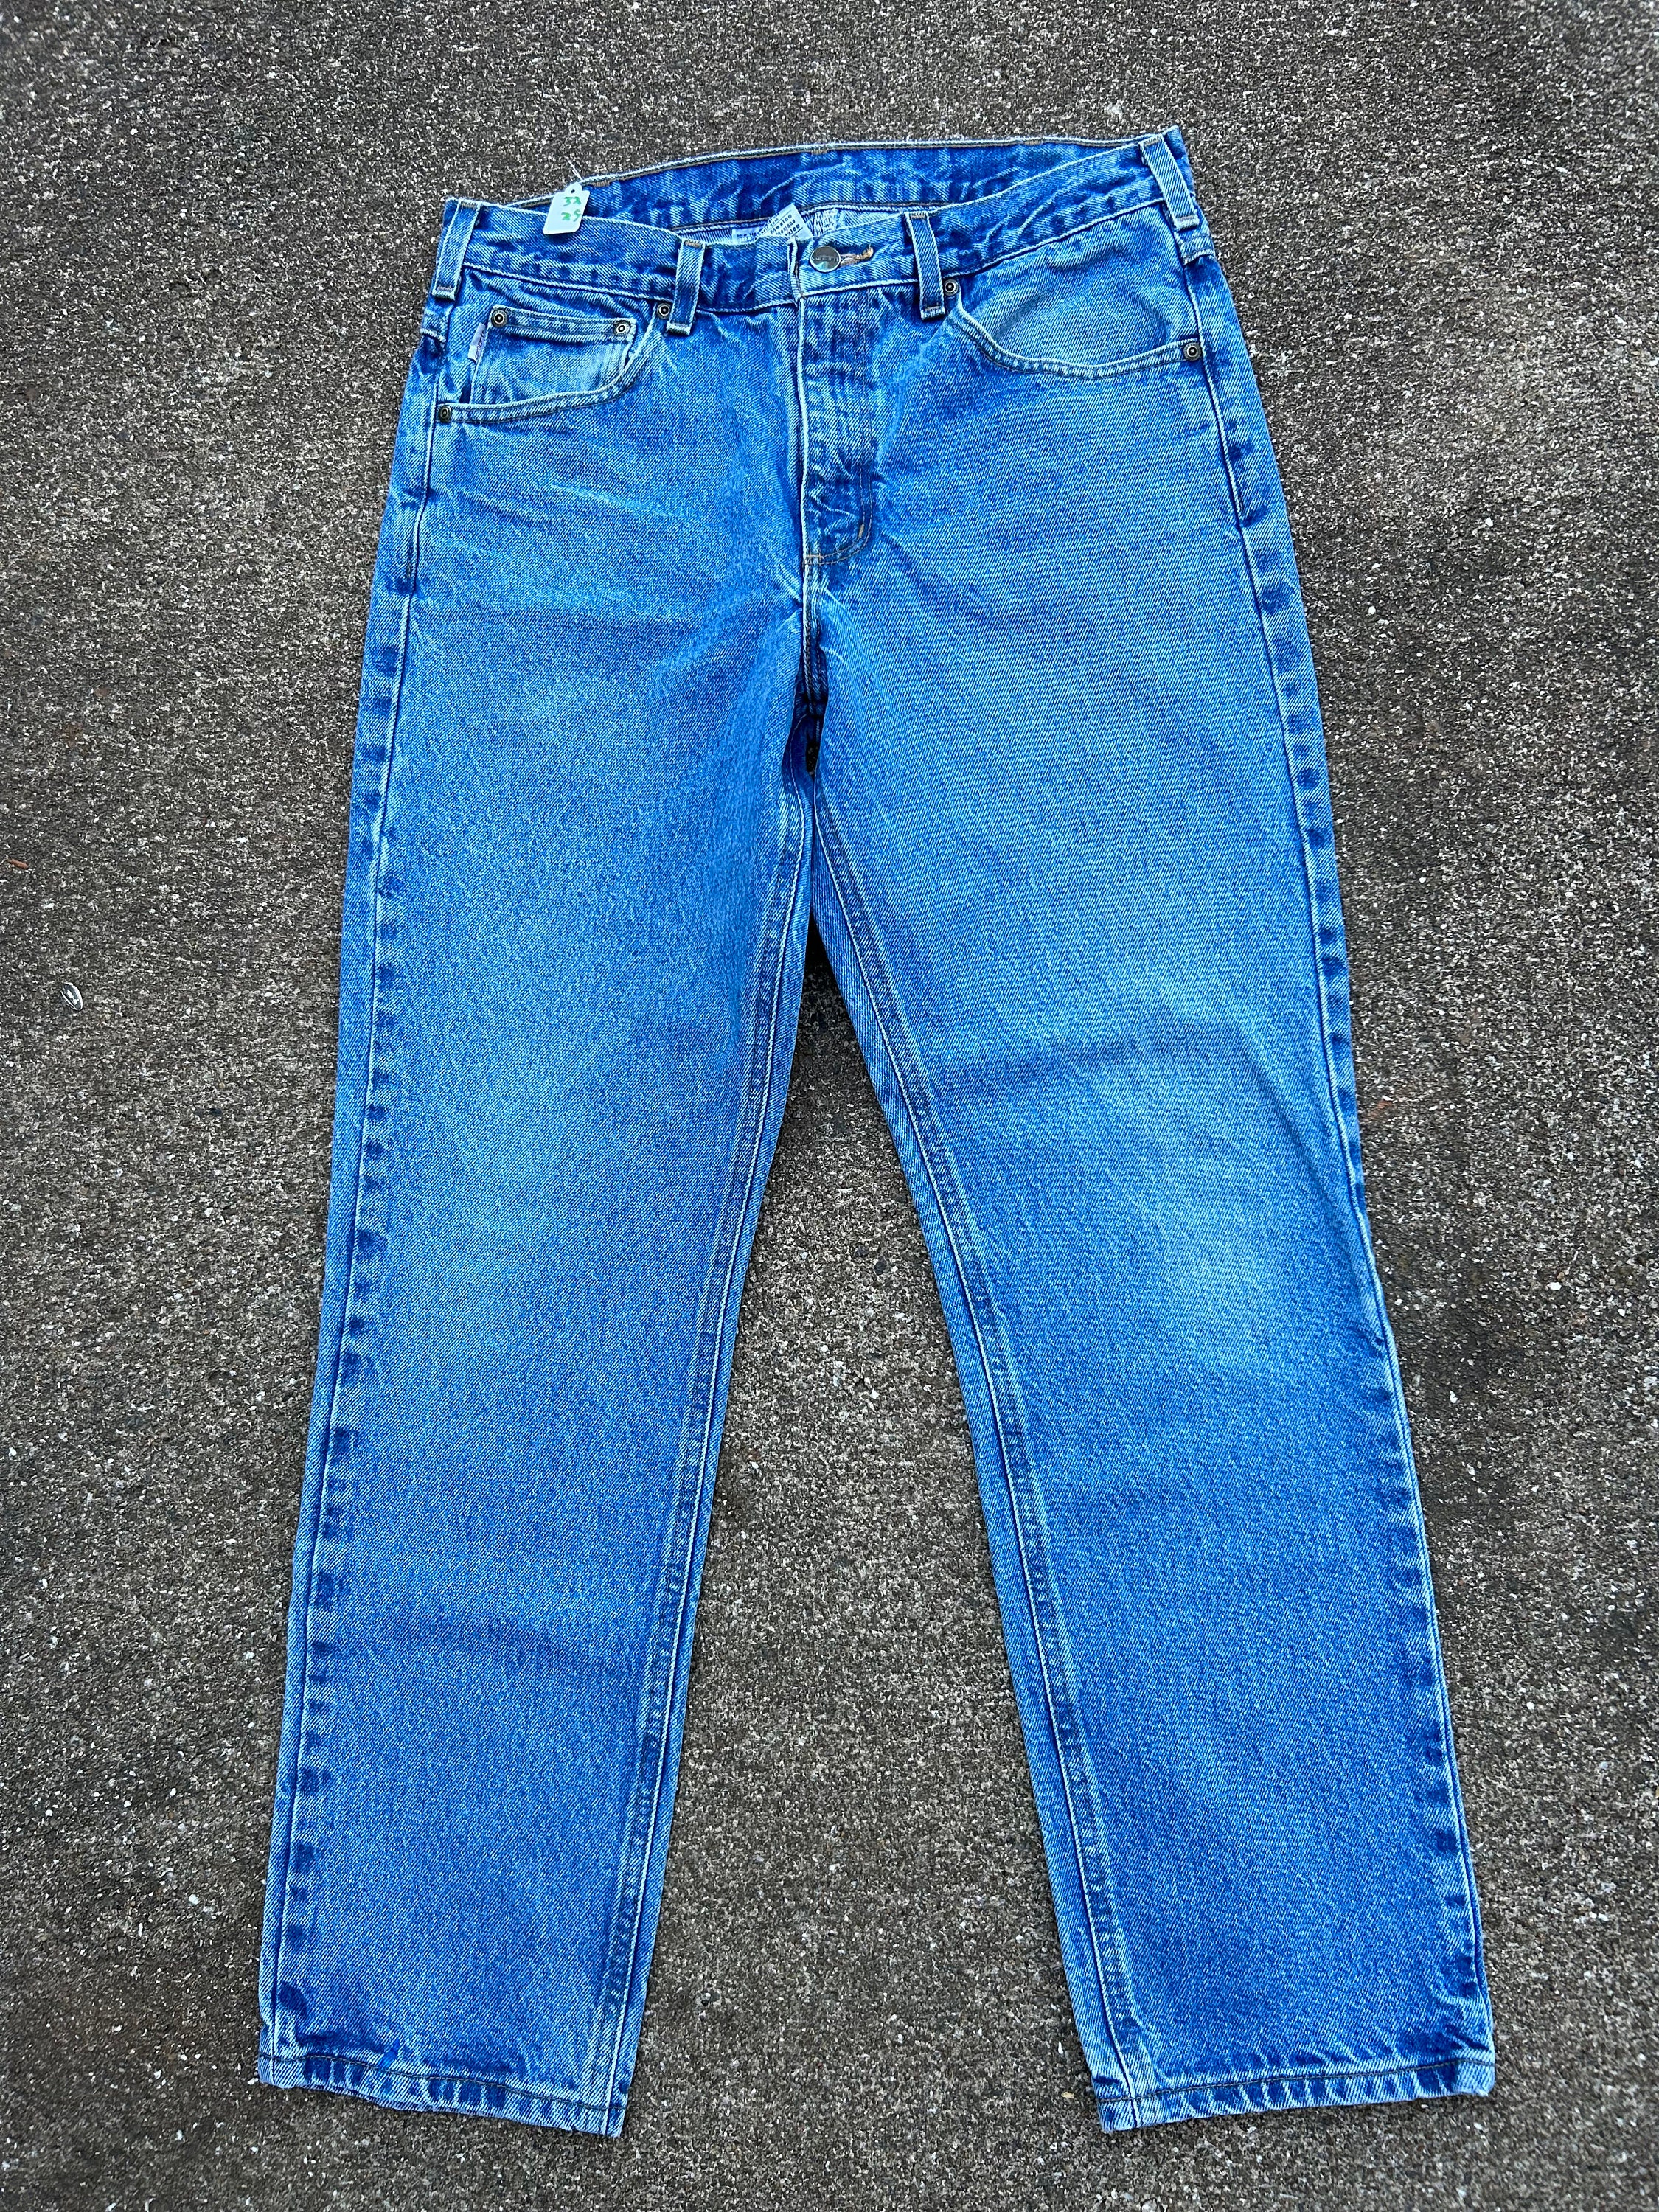 Blue Plaid Jeans 